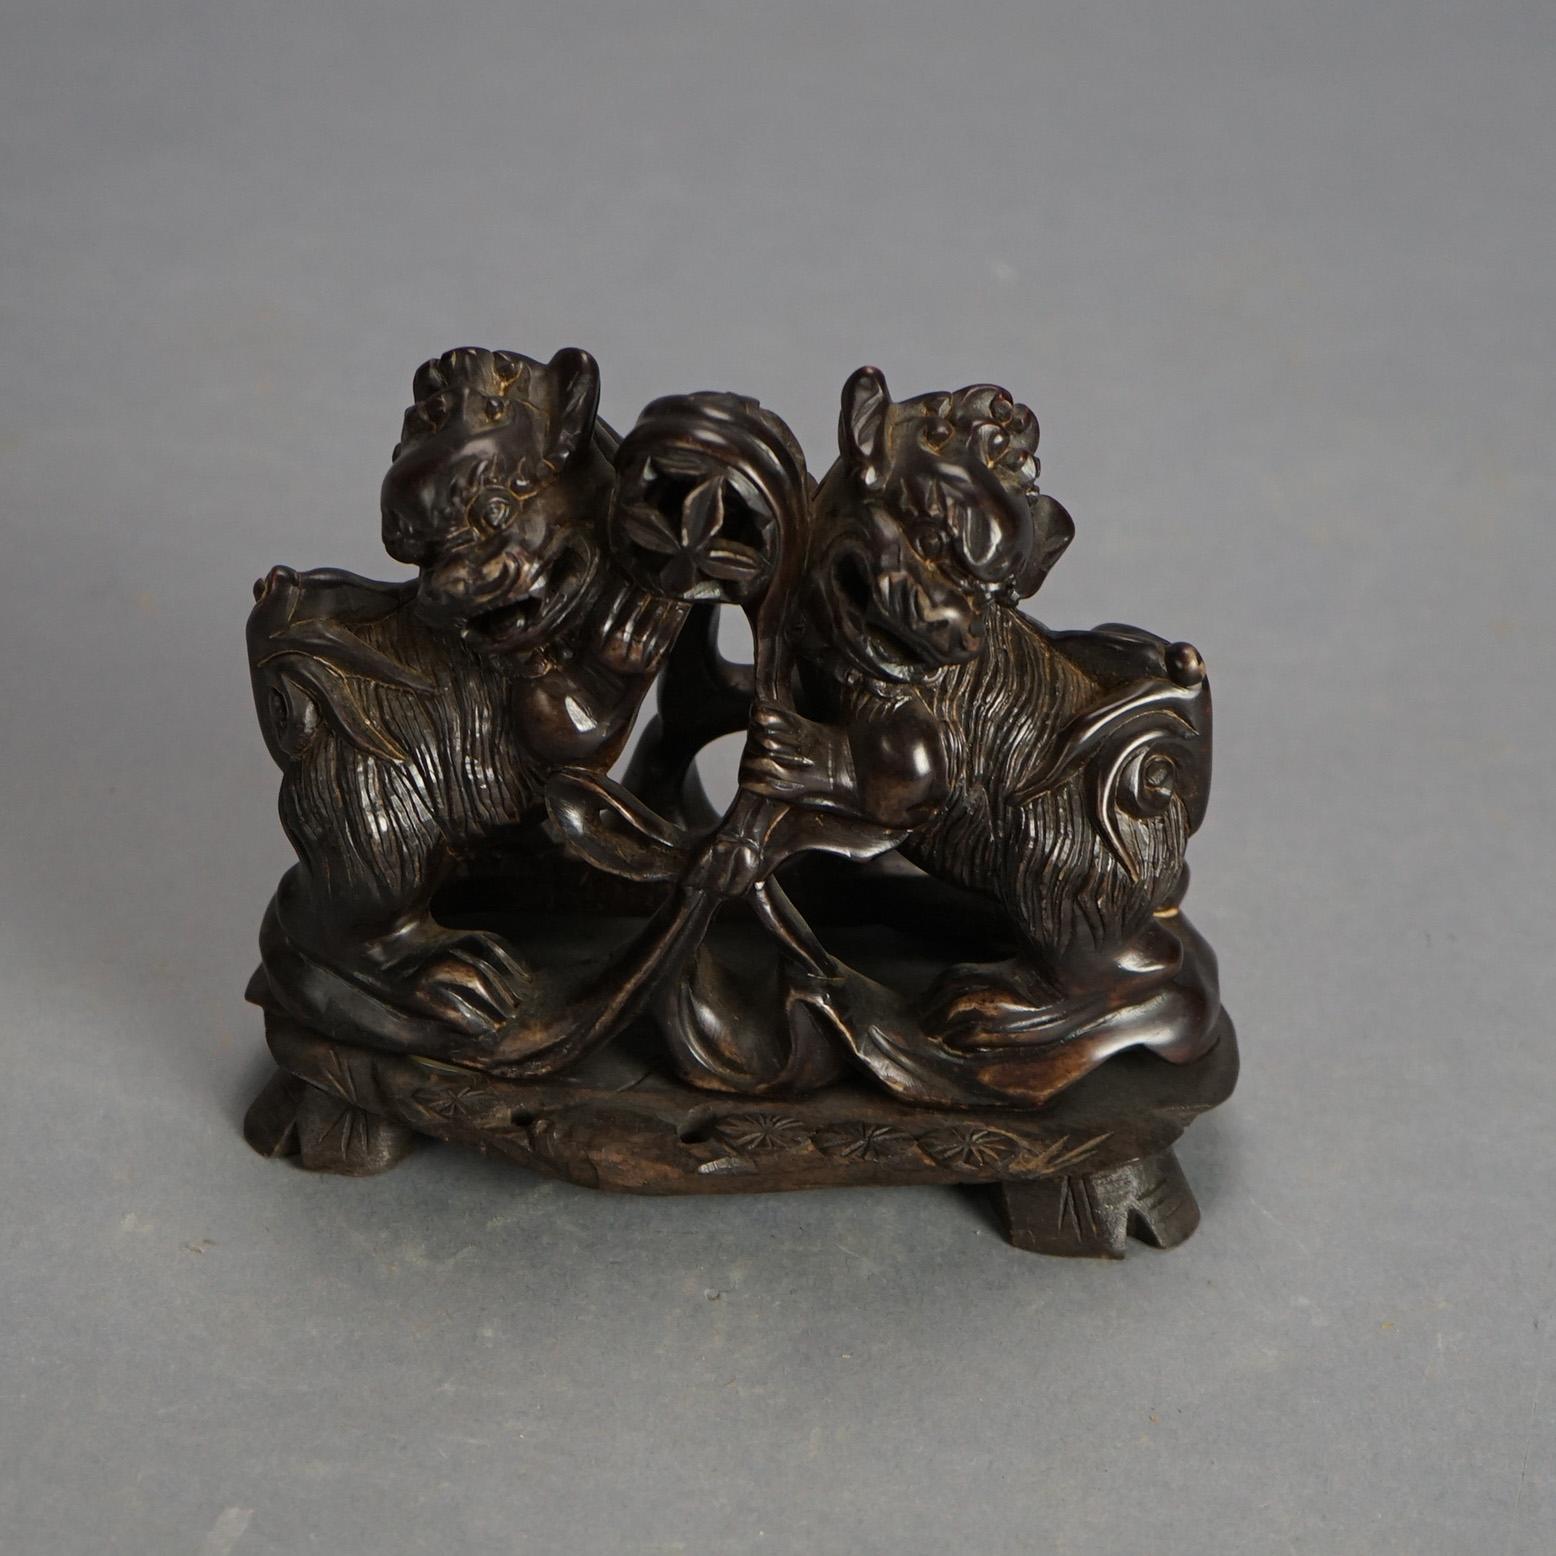 Antiquités chinoises sculptées en pierre dure - Chiens de foo C1920

Mesures - 4,25 